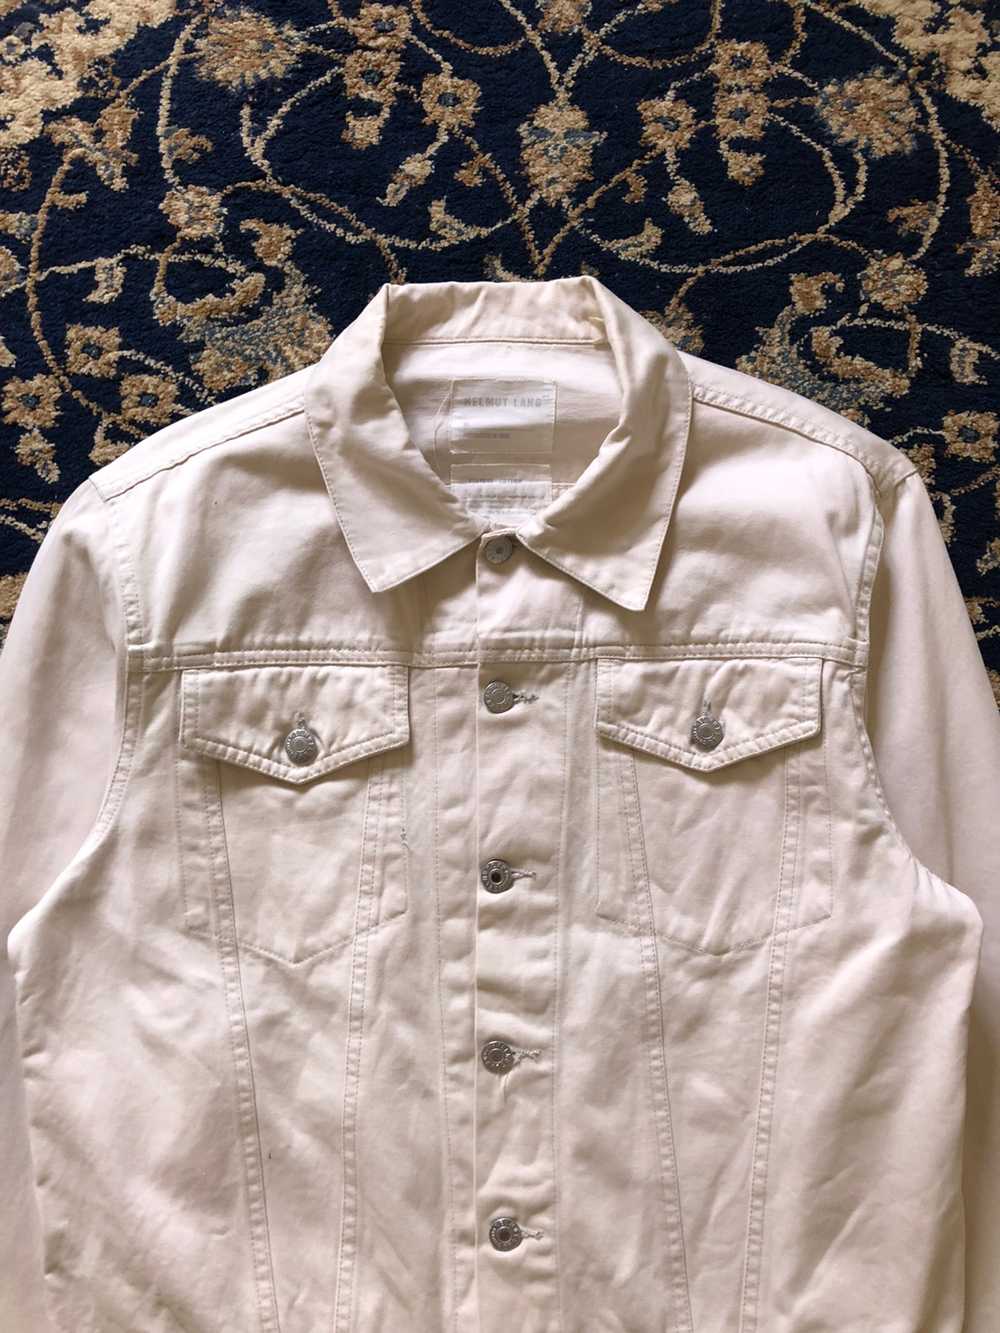 1998 Helmut Lang Off-white Vintage Cotton Jacket - image 2